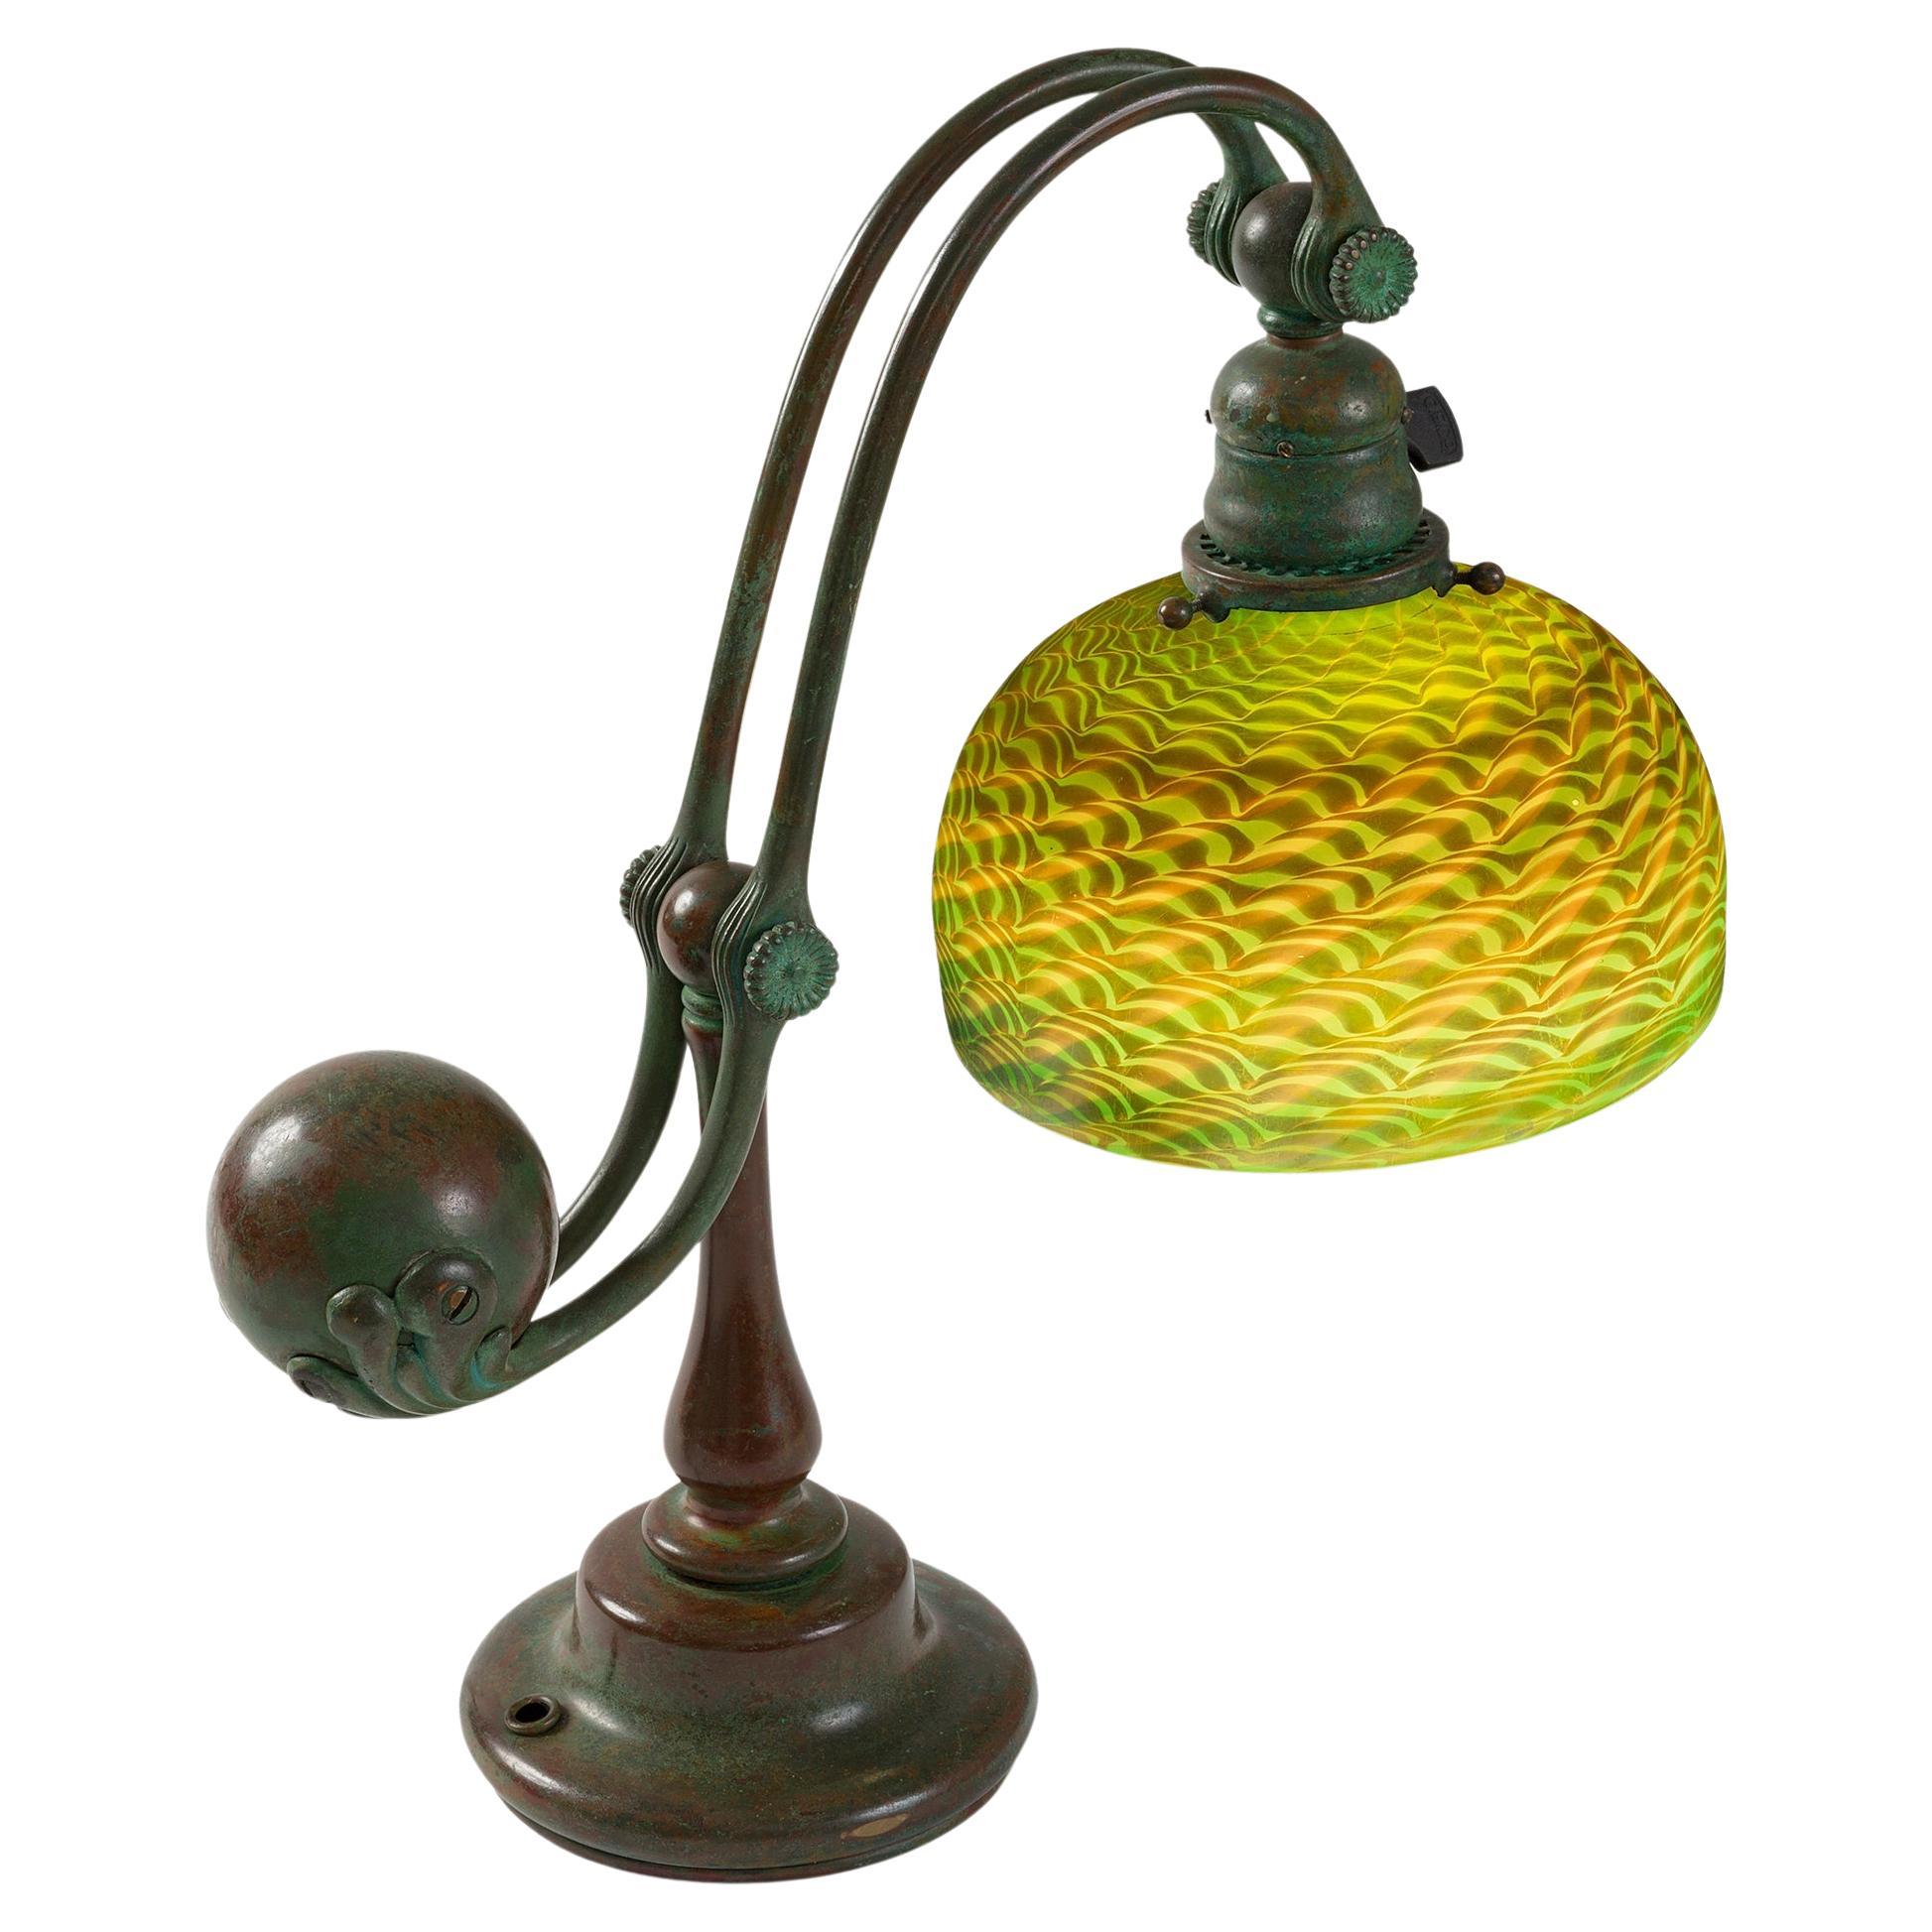 Tiffany Studios New York "Counter Balance" Damascene Favrile Glass Lamp